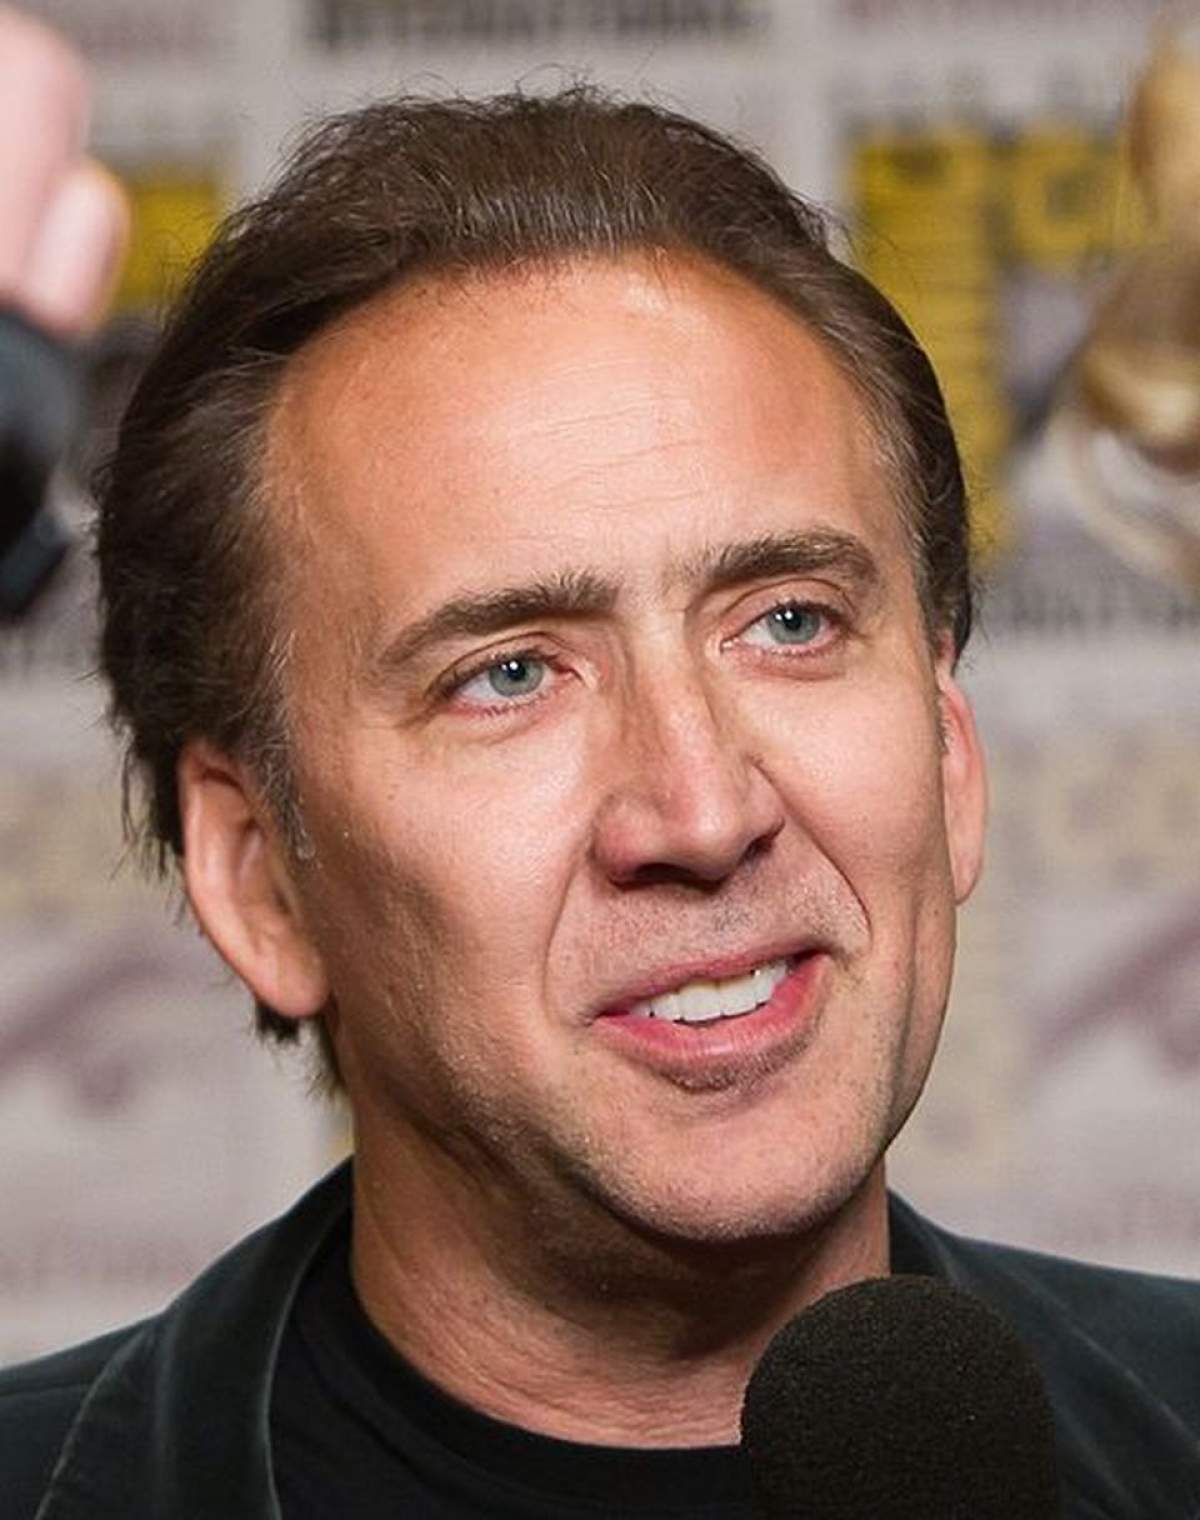 Incredibil! Poze cu Nicolas Cage făcând sex au fost furate!